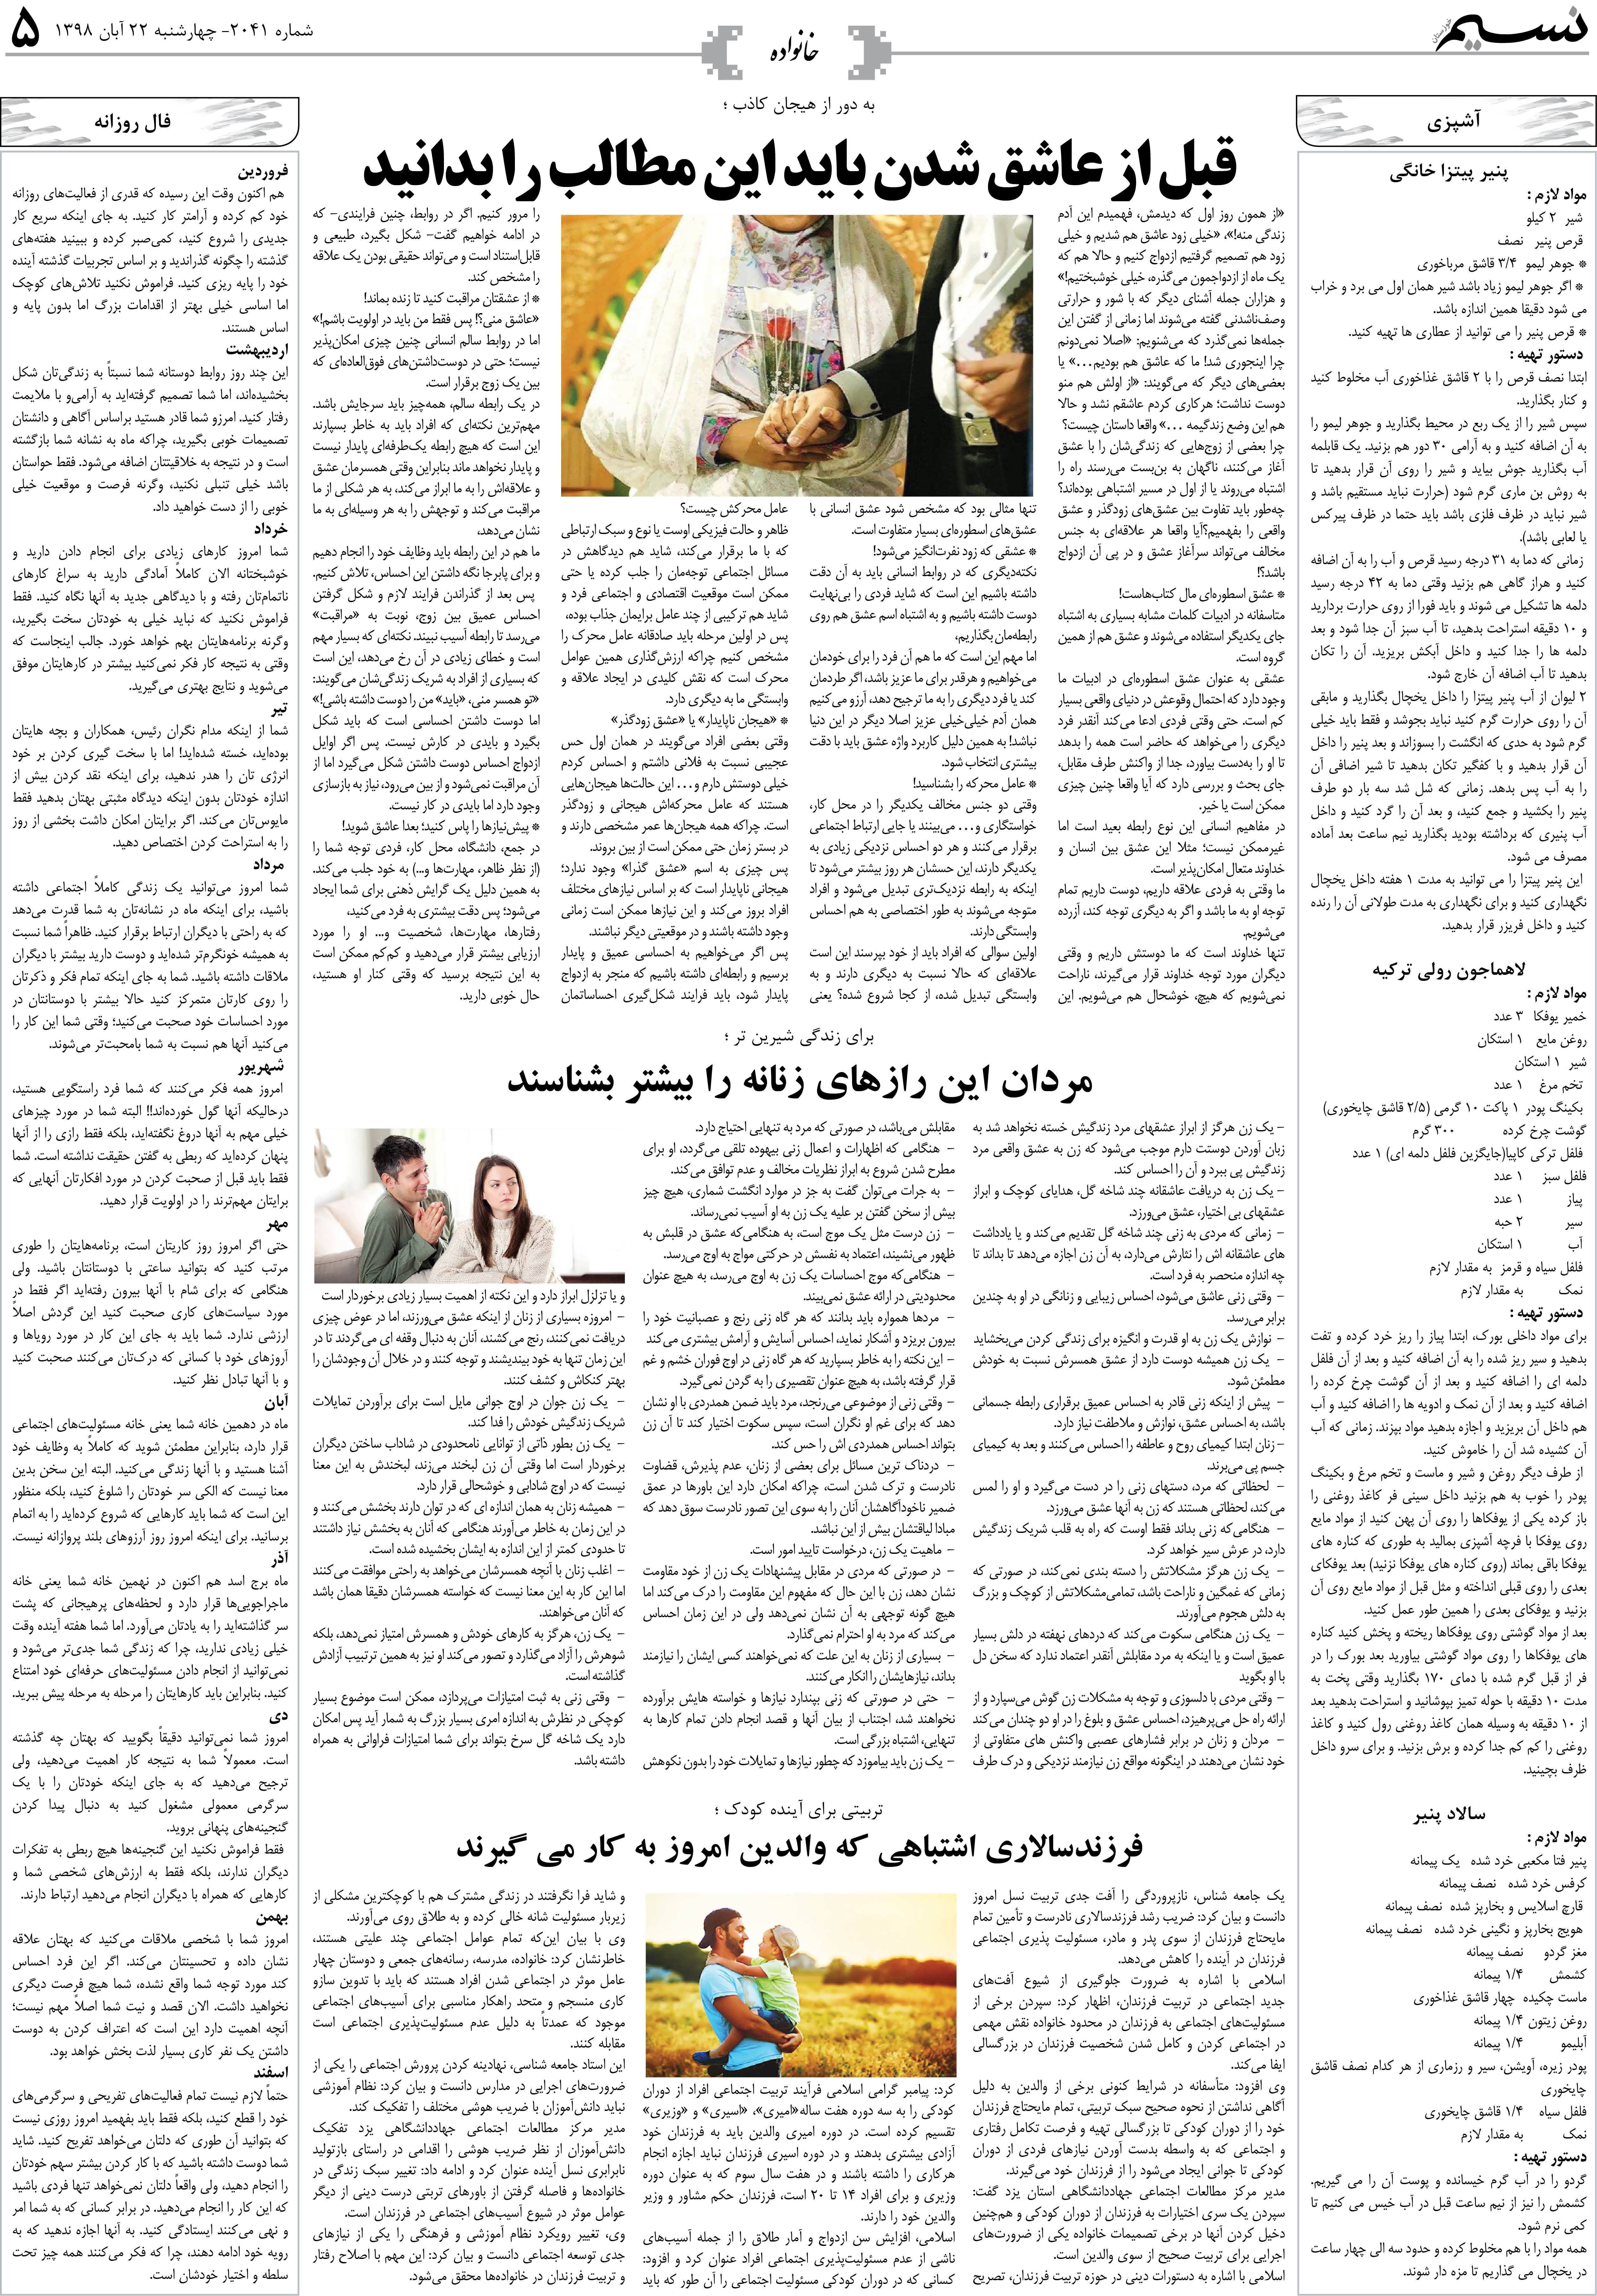 صفحه خانواده روزنامه نسیم شماره 2041